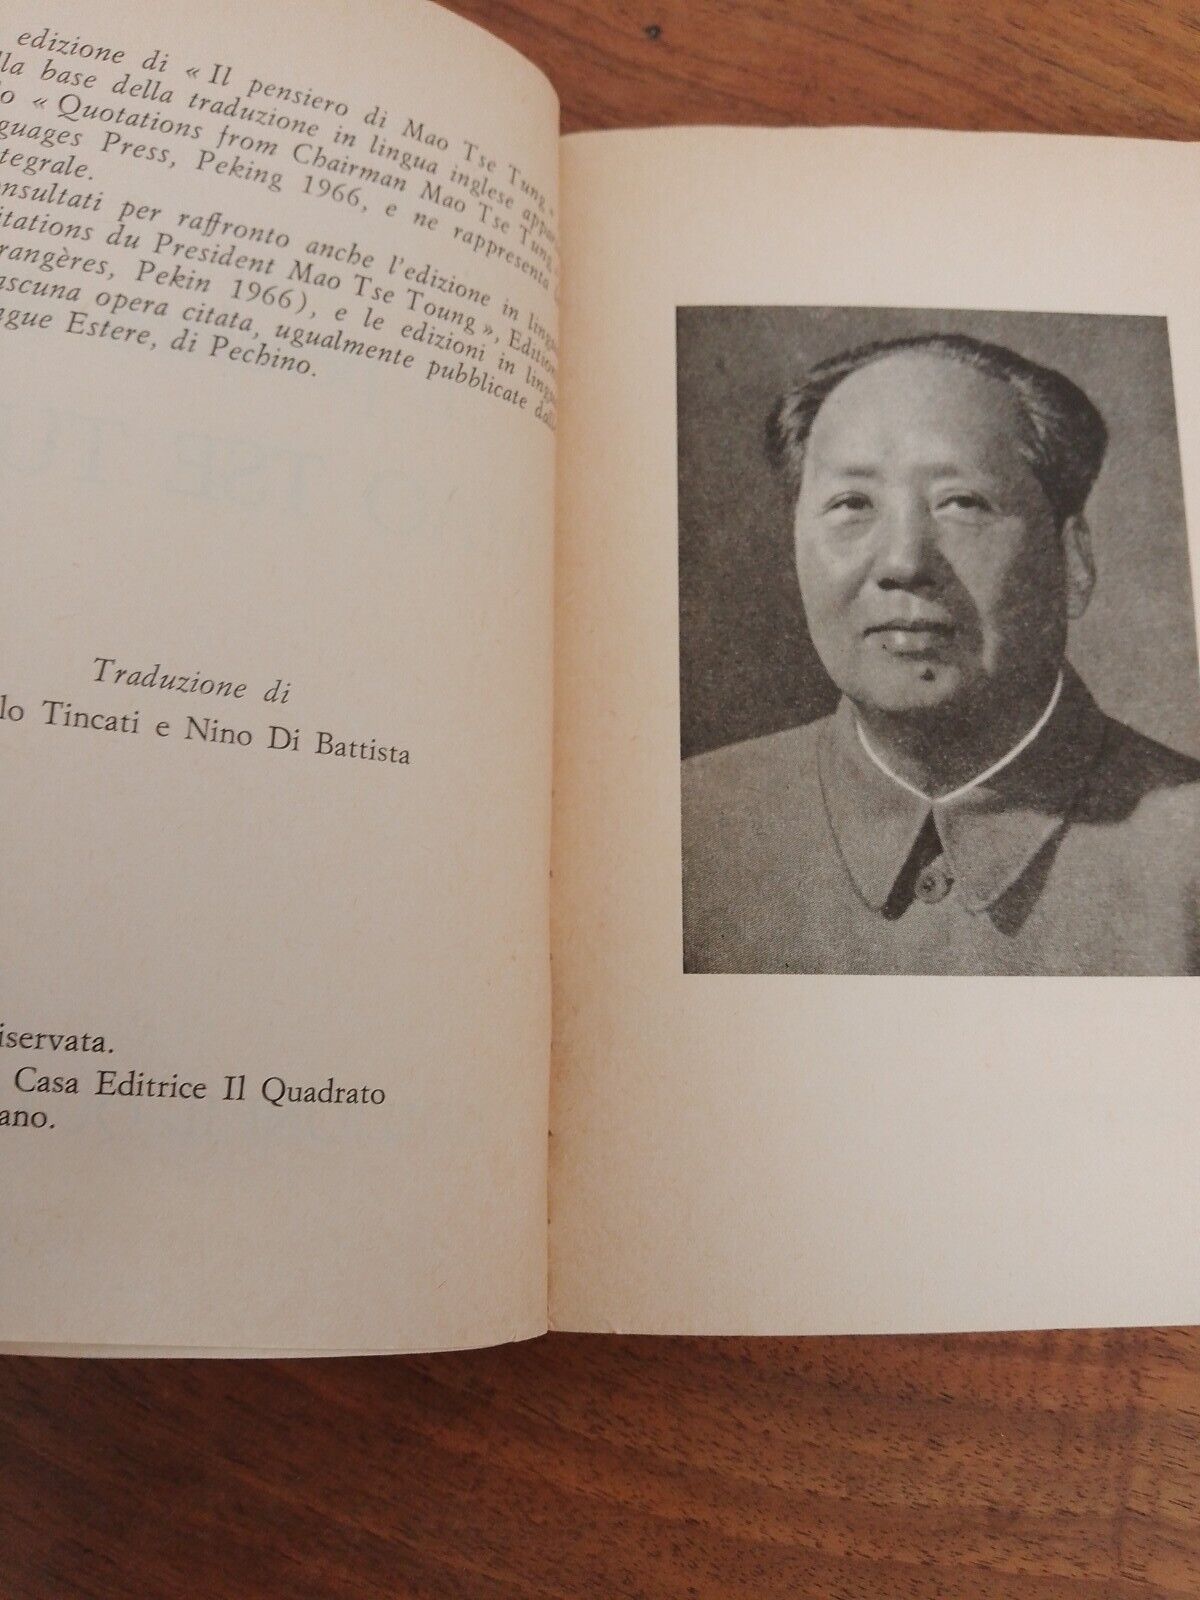 Il Pensiero di Mao Tse Tung, Il libro delle Guardie Rosse, ed. Il quadrato 1967